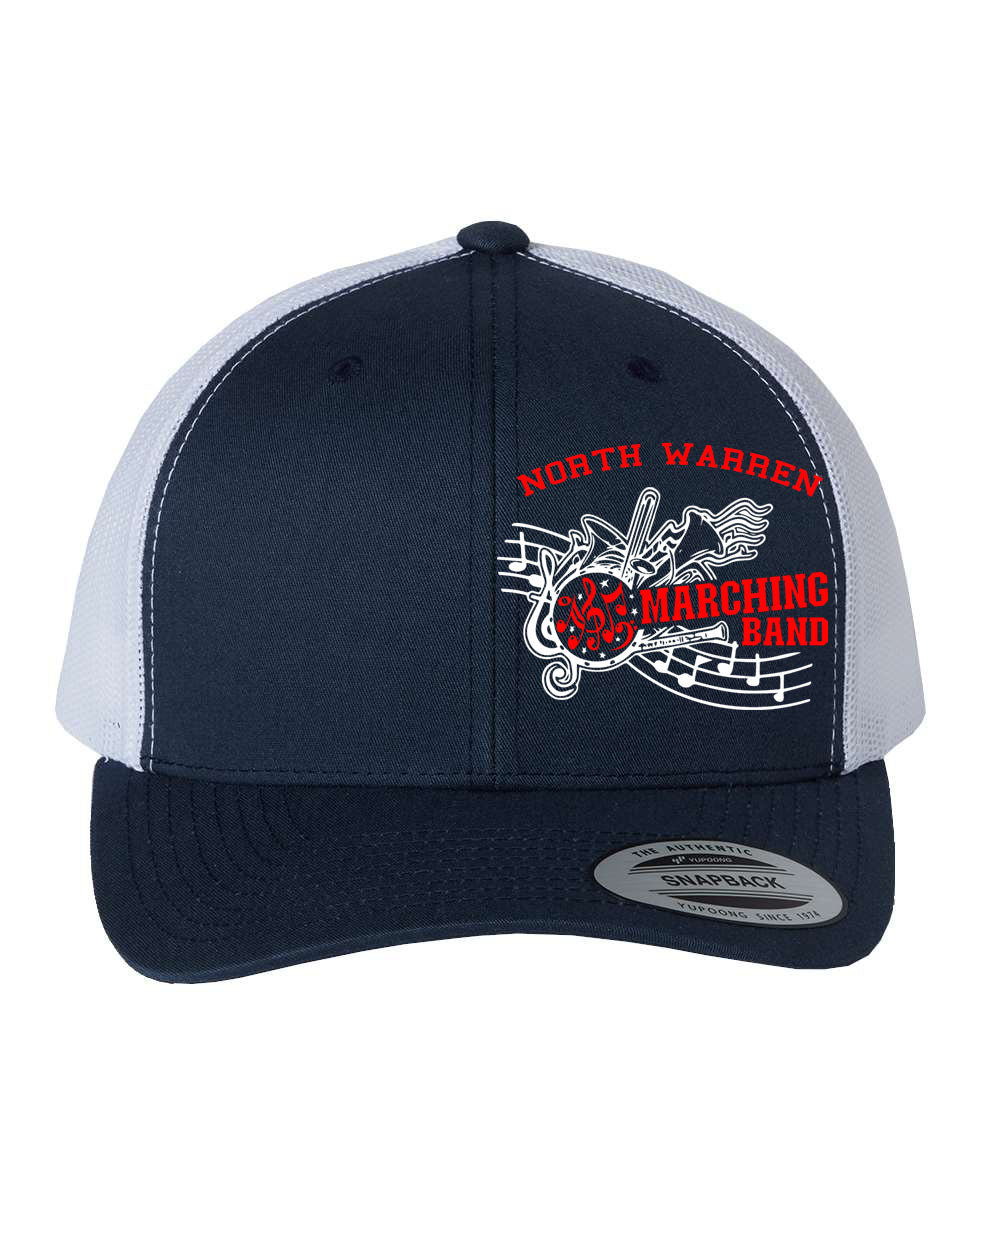 North Warren Band Design 1 Trucker Hat